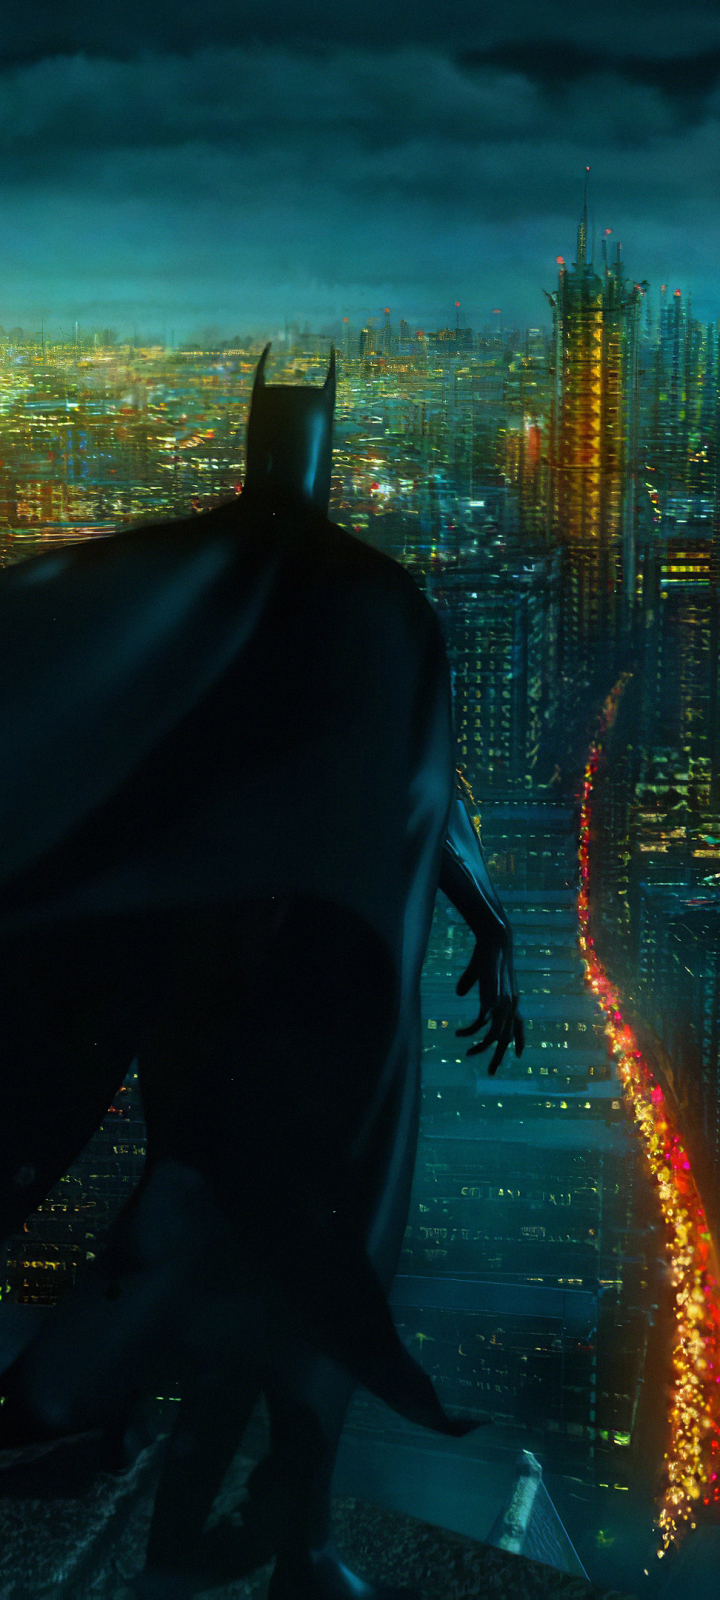 Descarga gratuita de fondo de pantalla para móvil de Ciudad, Historietas, The Batman, Dc Comics, Hombre Murciélago, Gotham City.